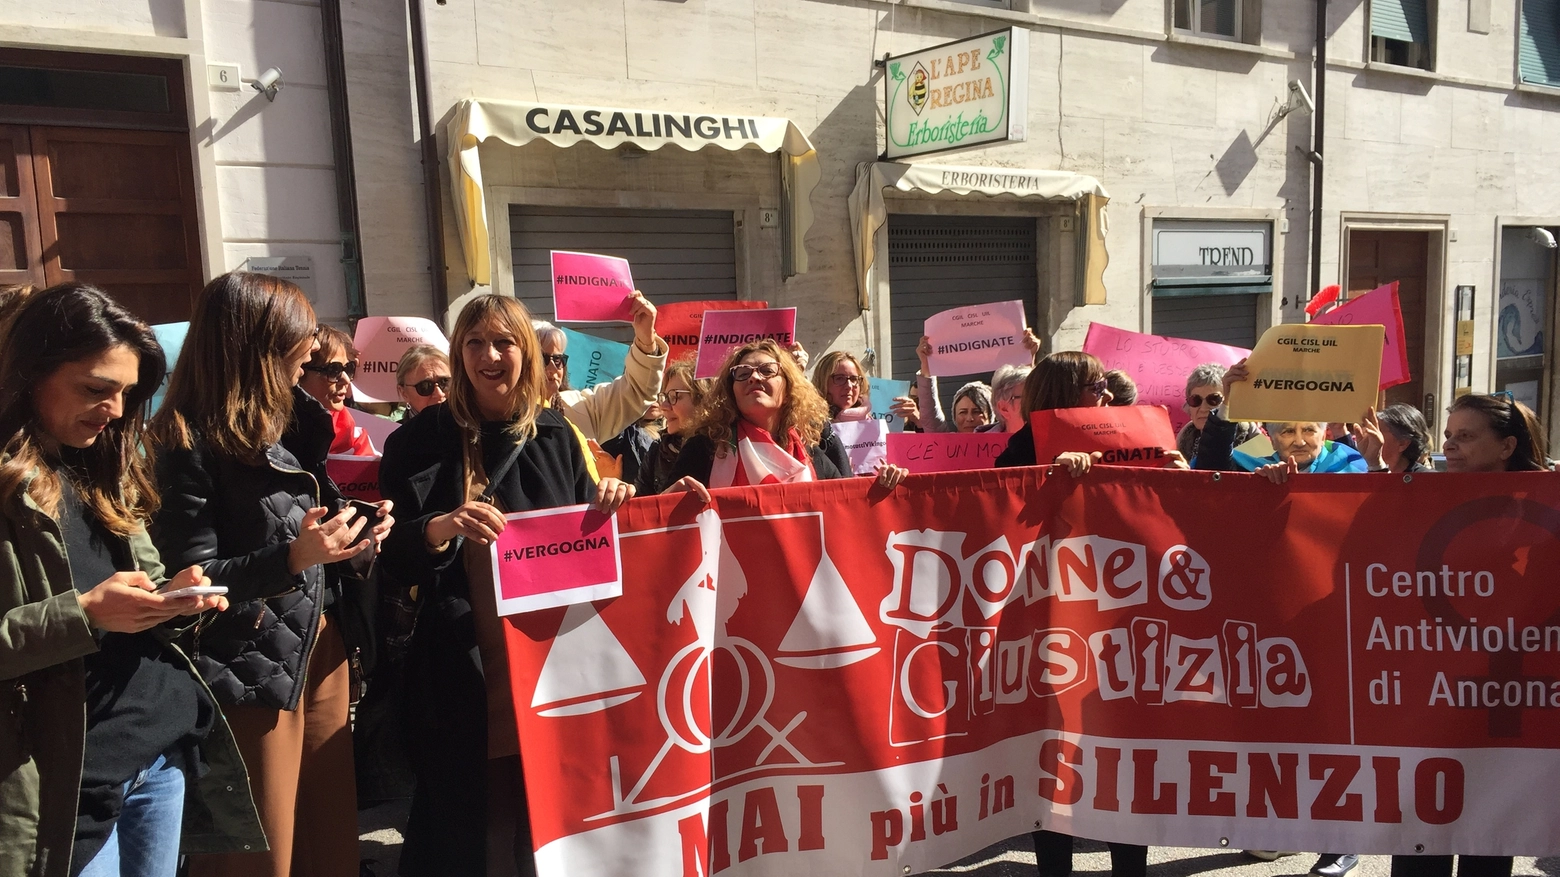 Sentenza choc, flash mob sotto la Corte di Appello di Ancona